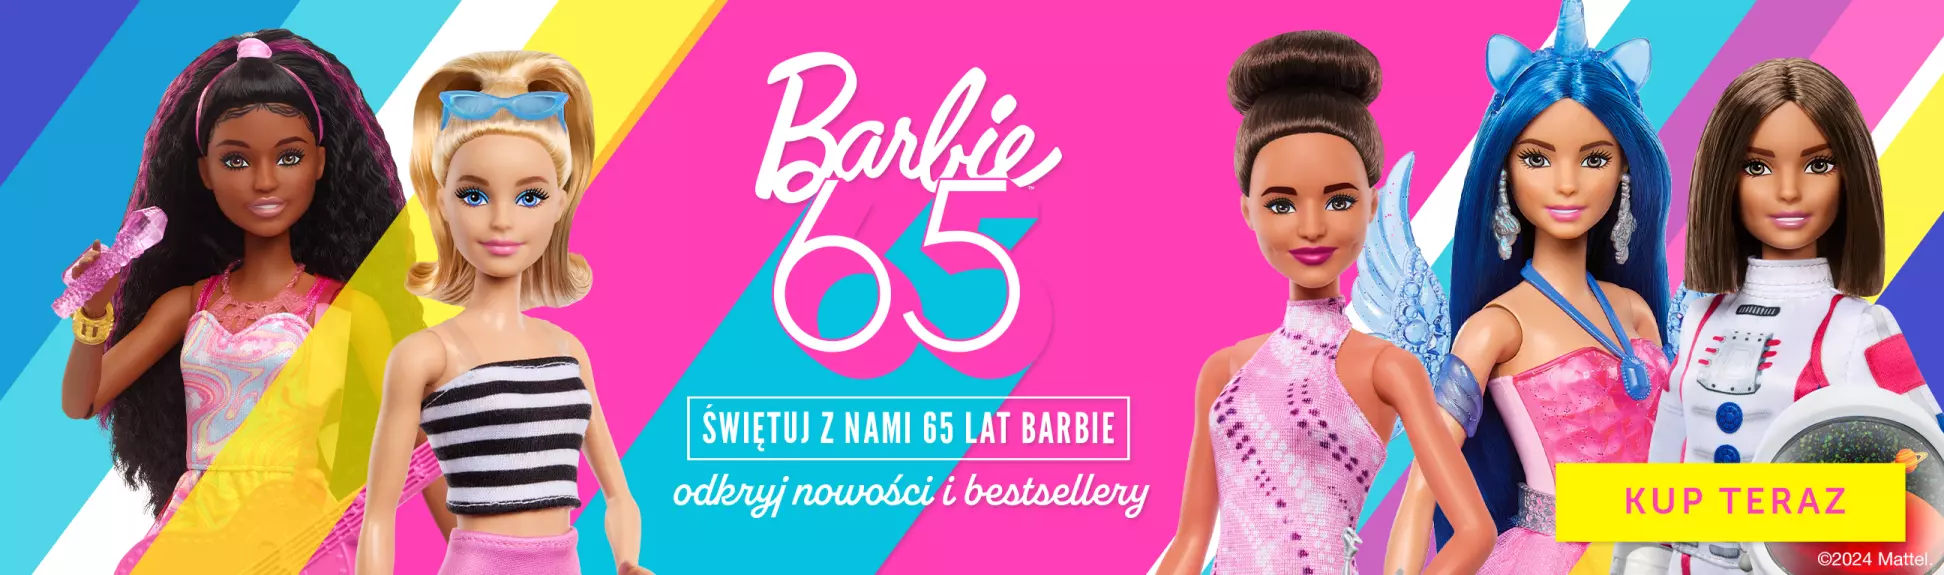 Świętuj z nami 65 lat Barbie!